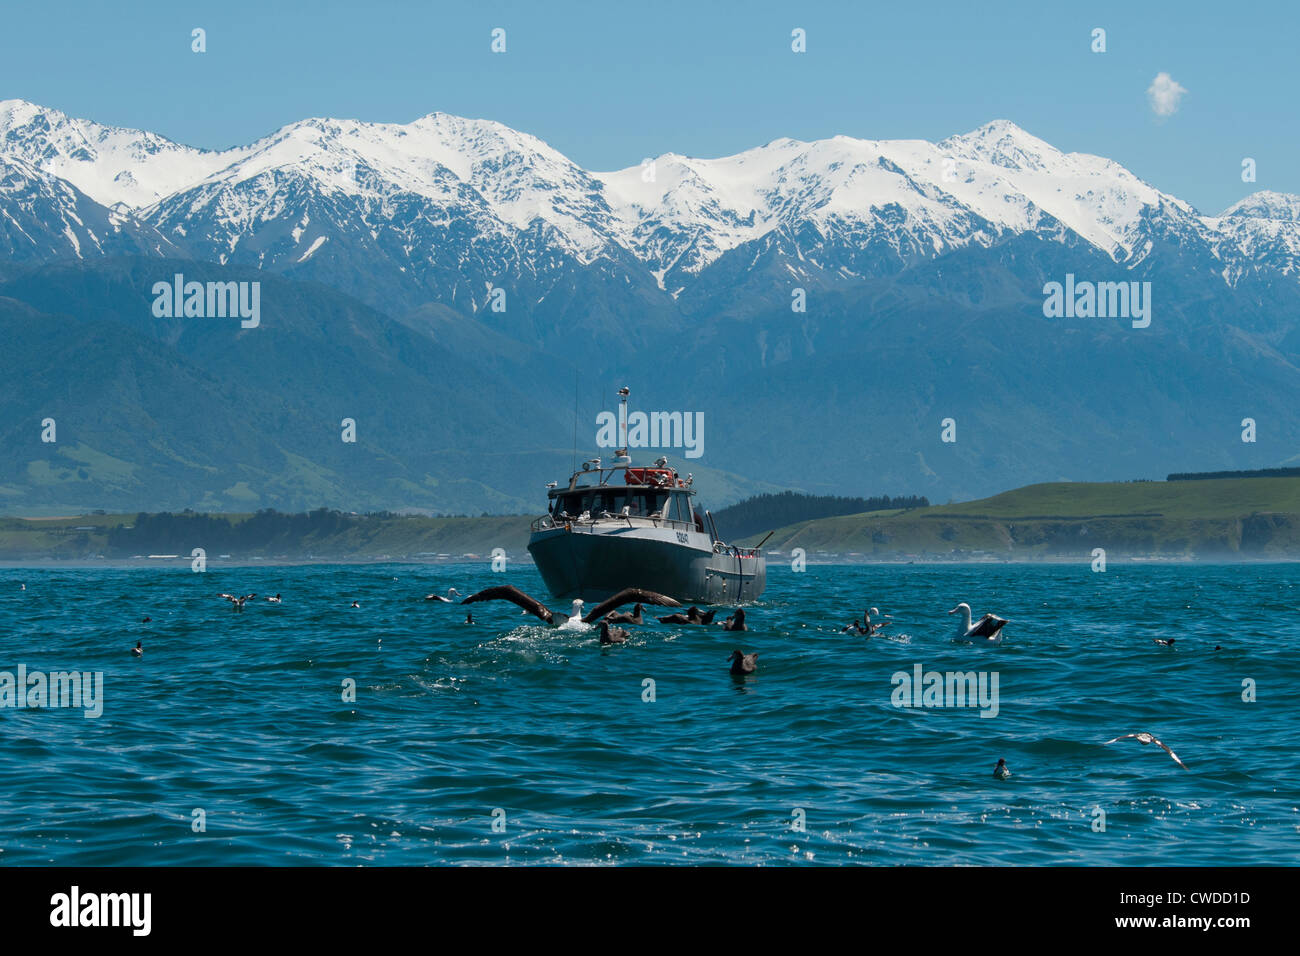 En vertu enneigés des gammes de Kaikoura albatros et autres oiseaux marins sont regarder un bateau de pêcheurs sur l'océan Pacifique. Banque D'Images